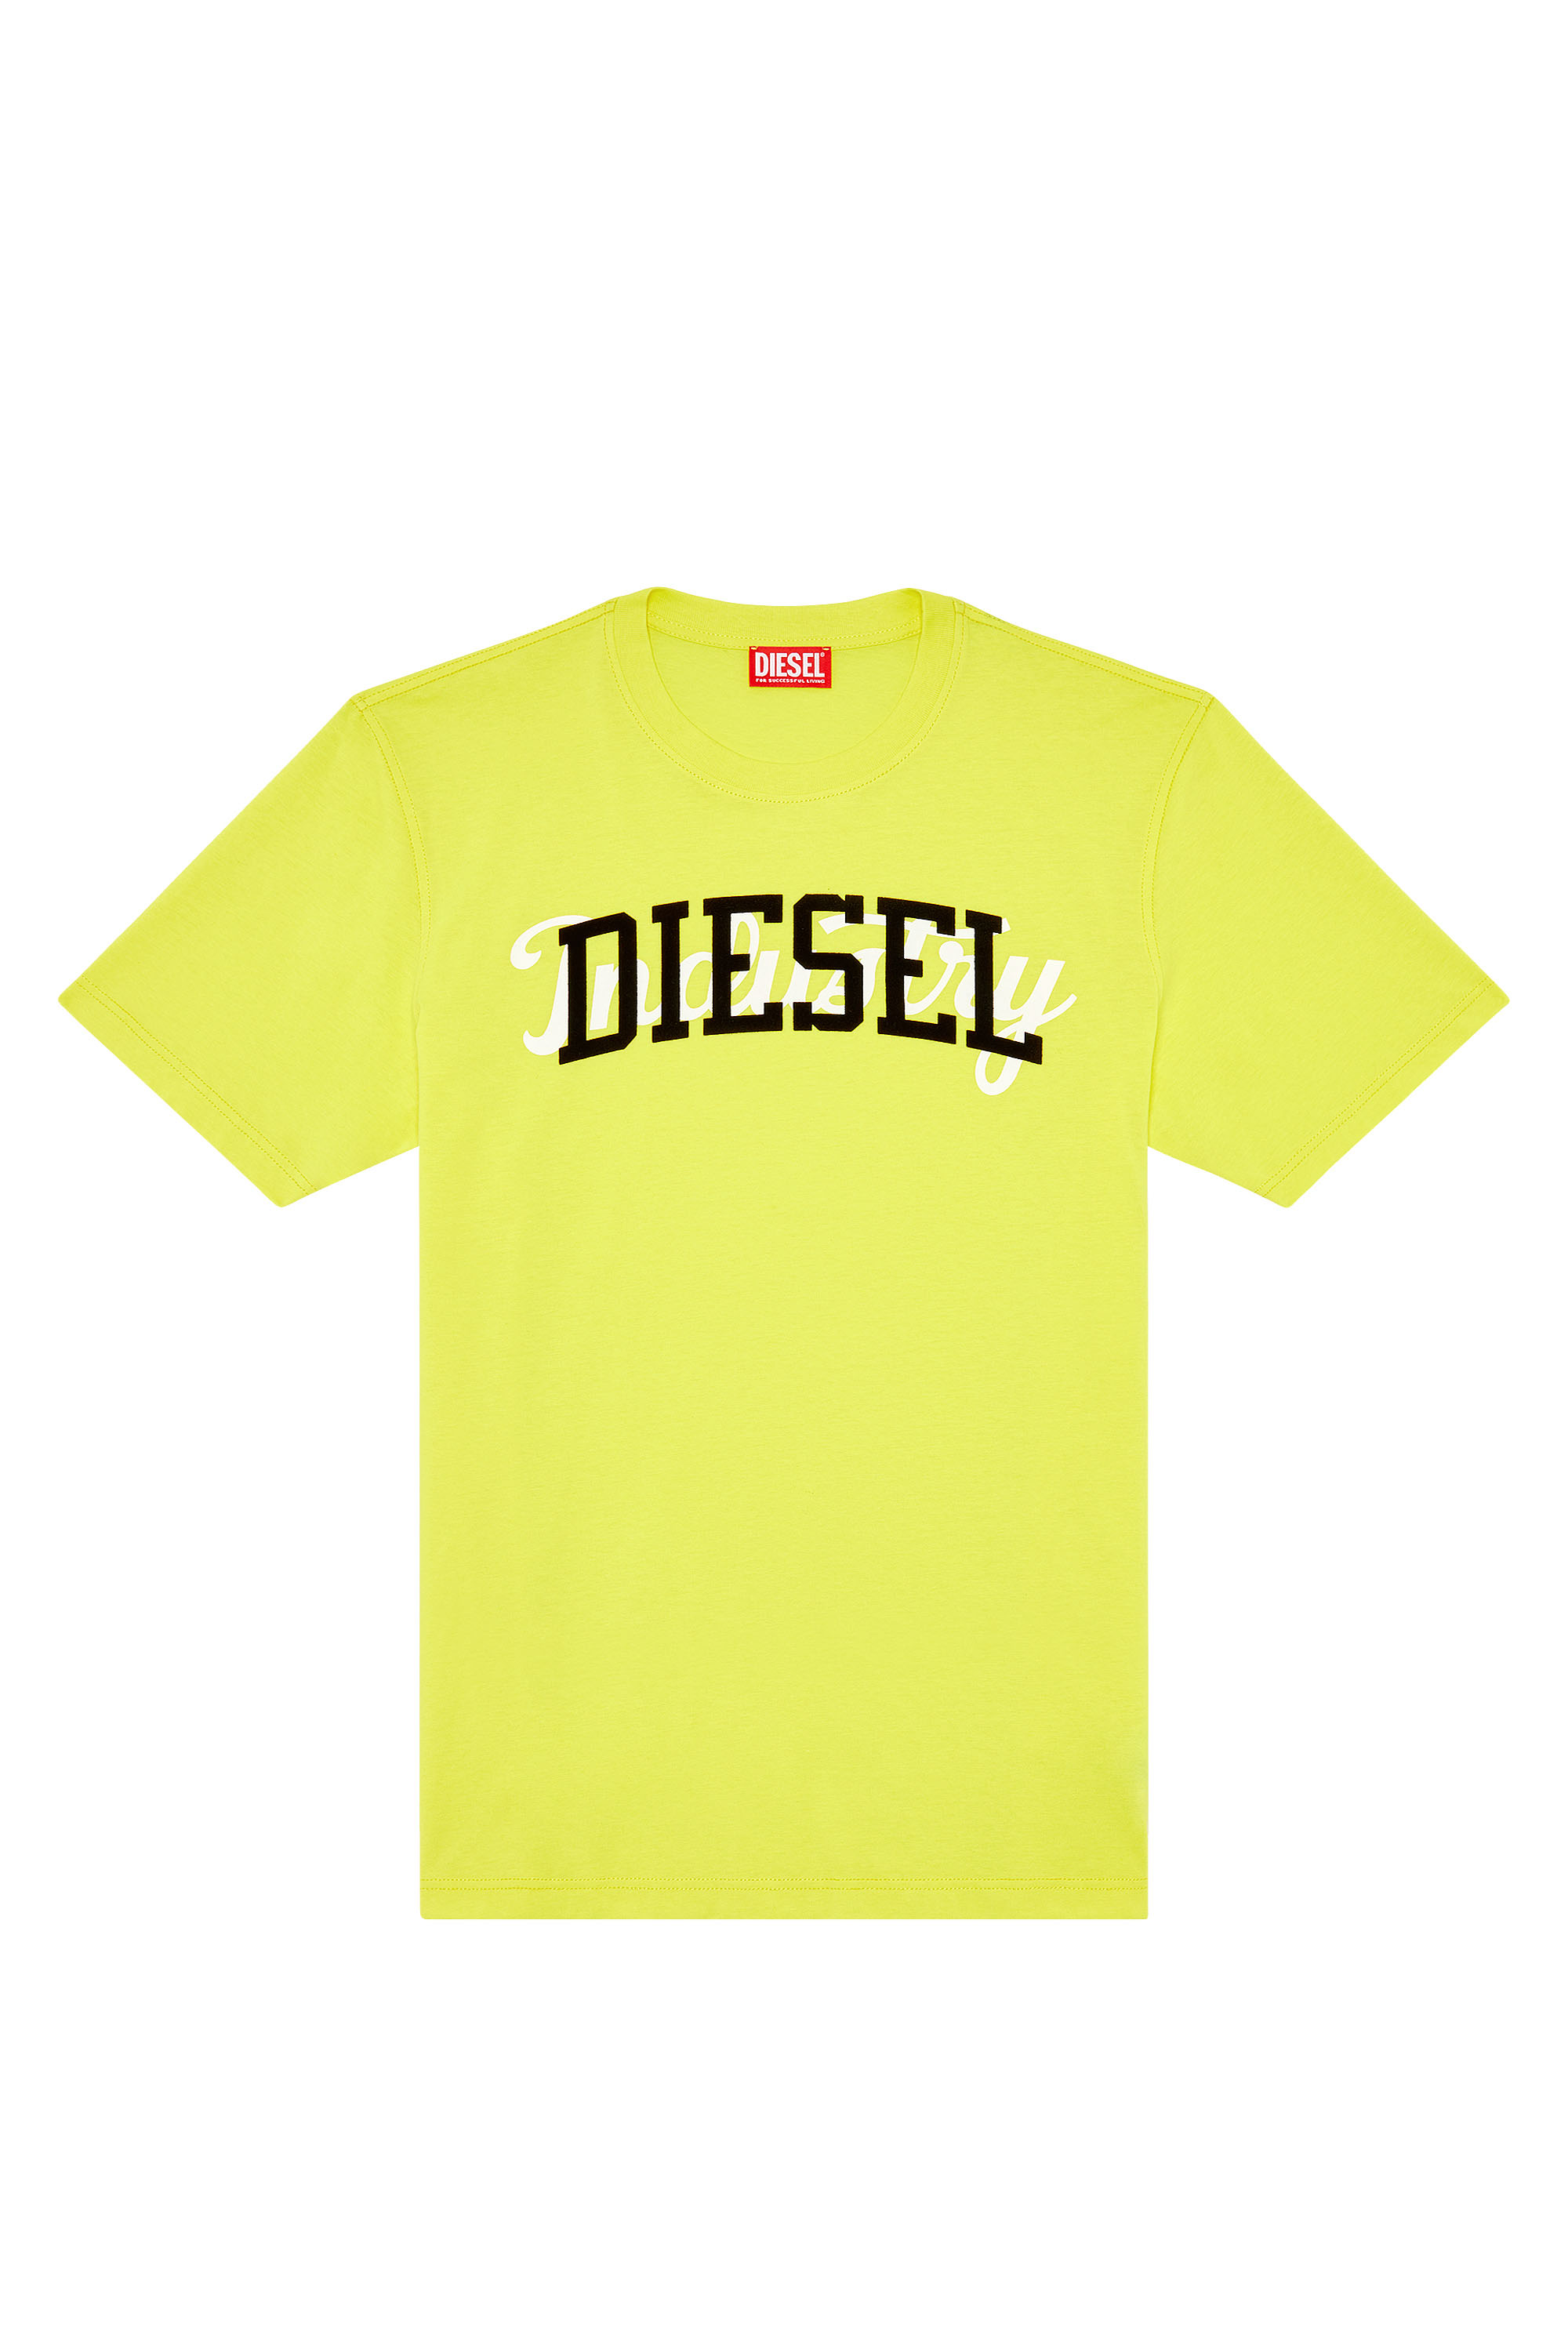 Diesel - T-JUST-N10, Yellow - Image 3